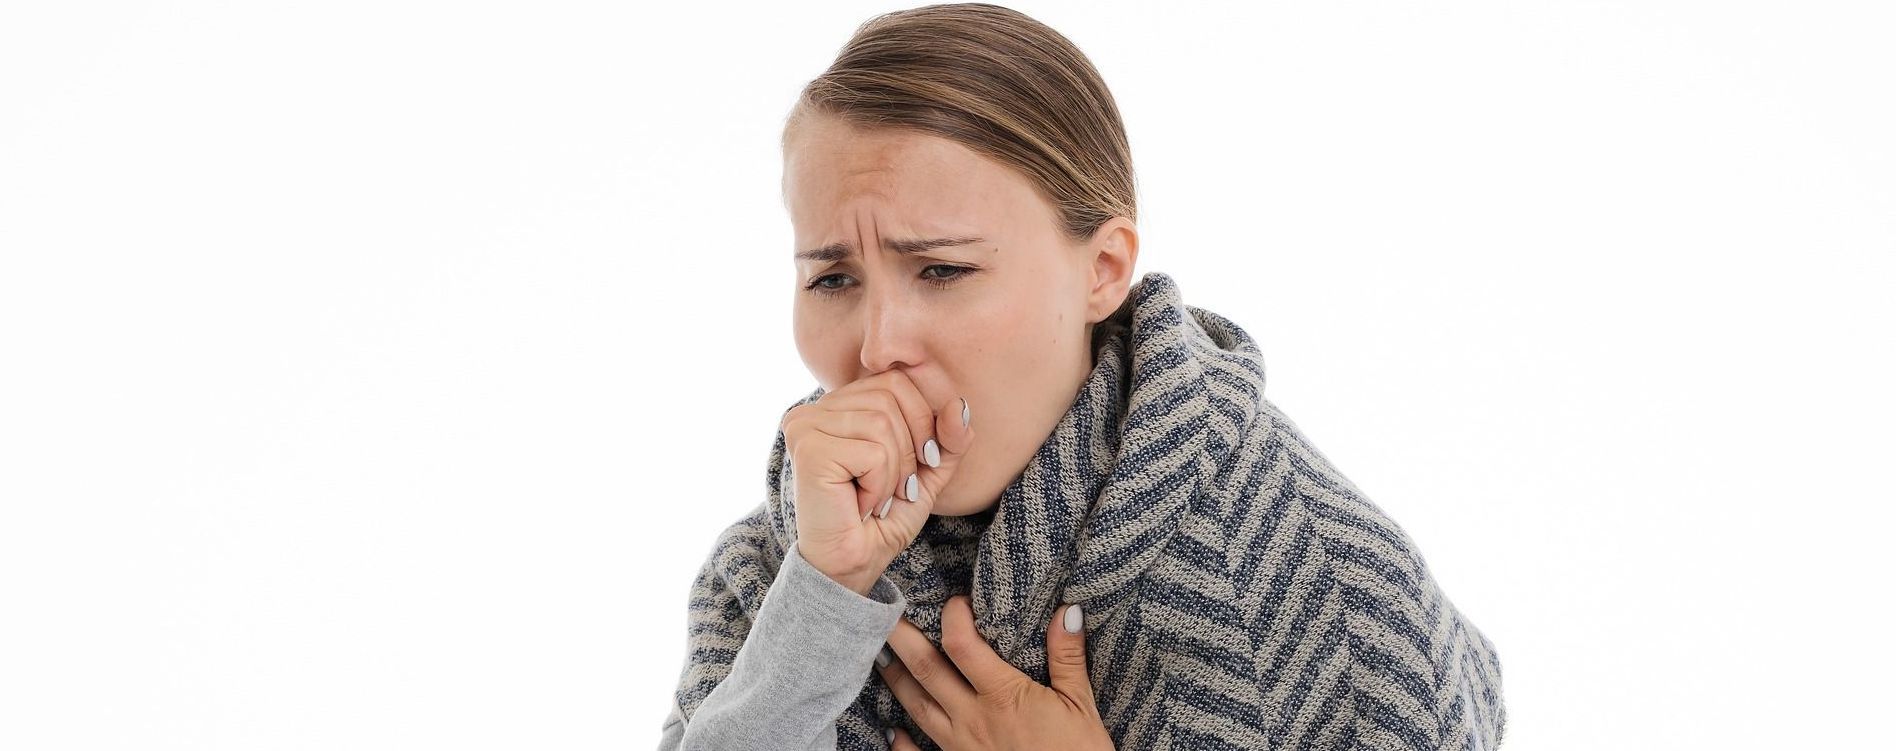 Туберкулез излечим: как правильно кашлять